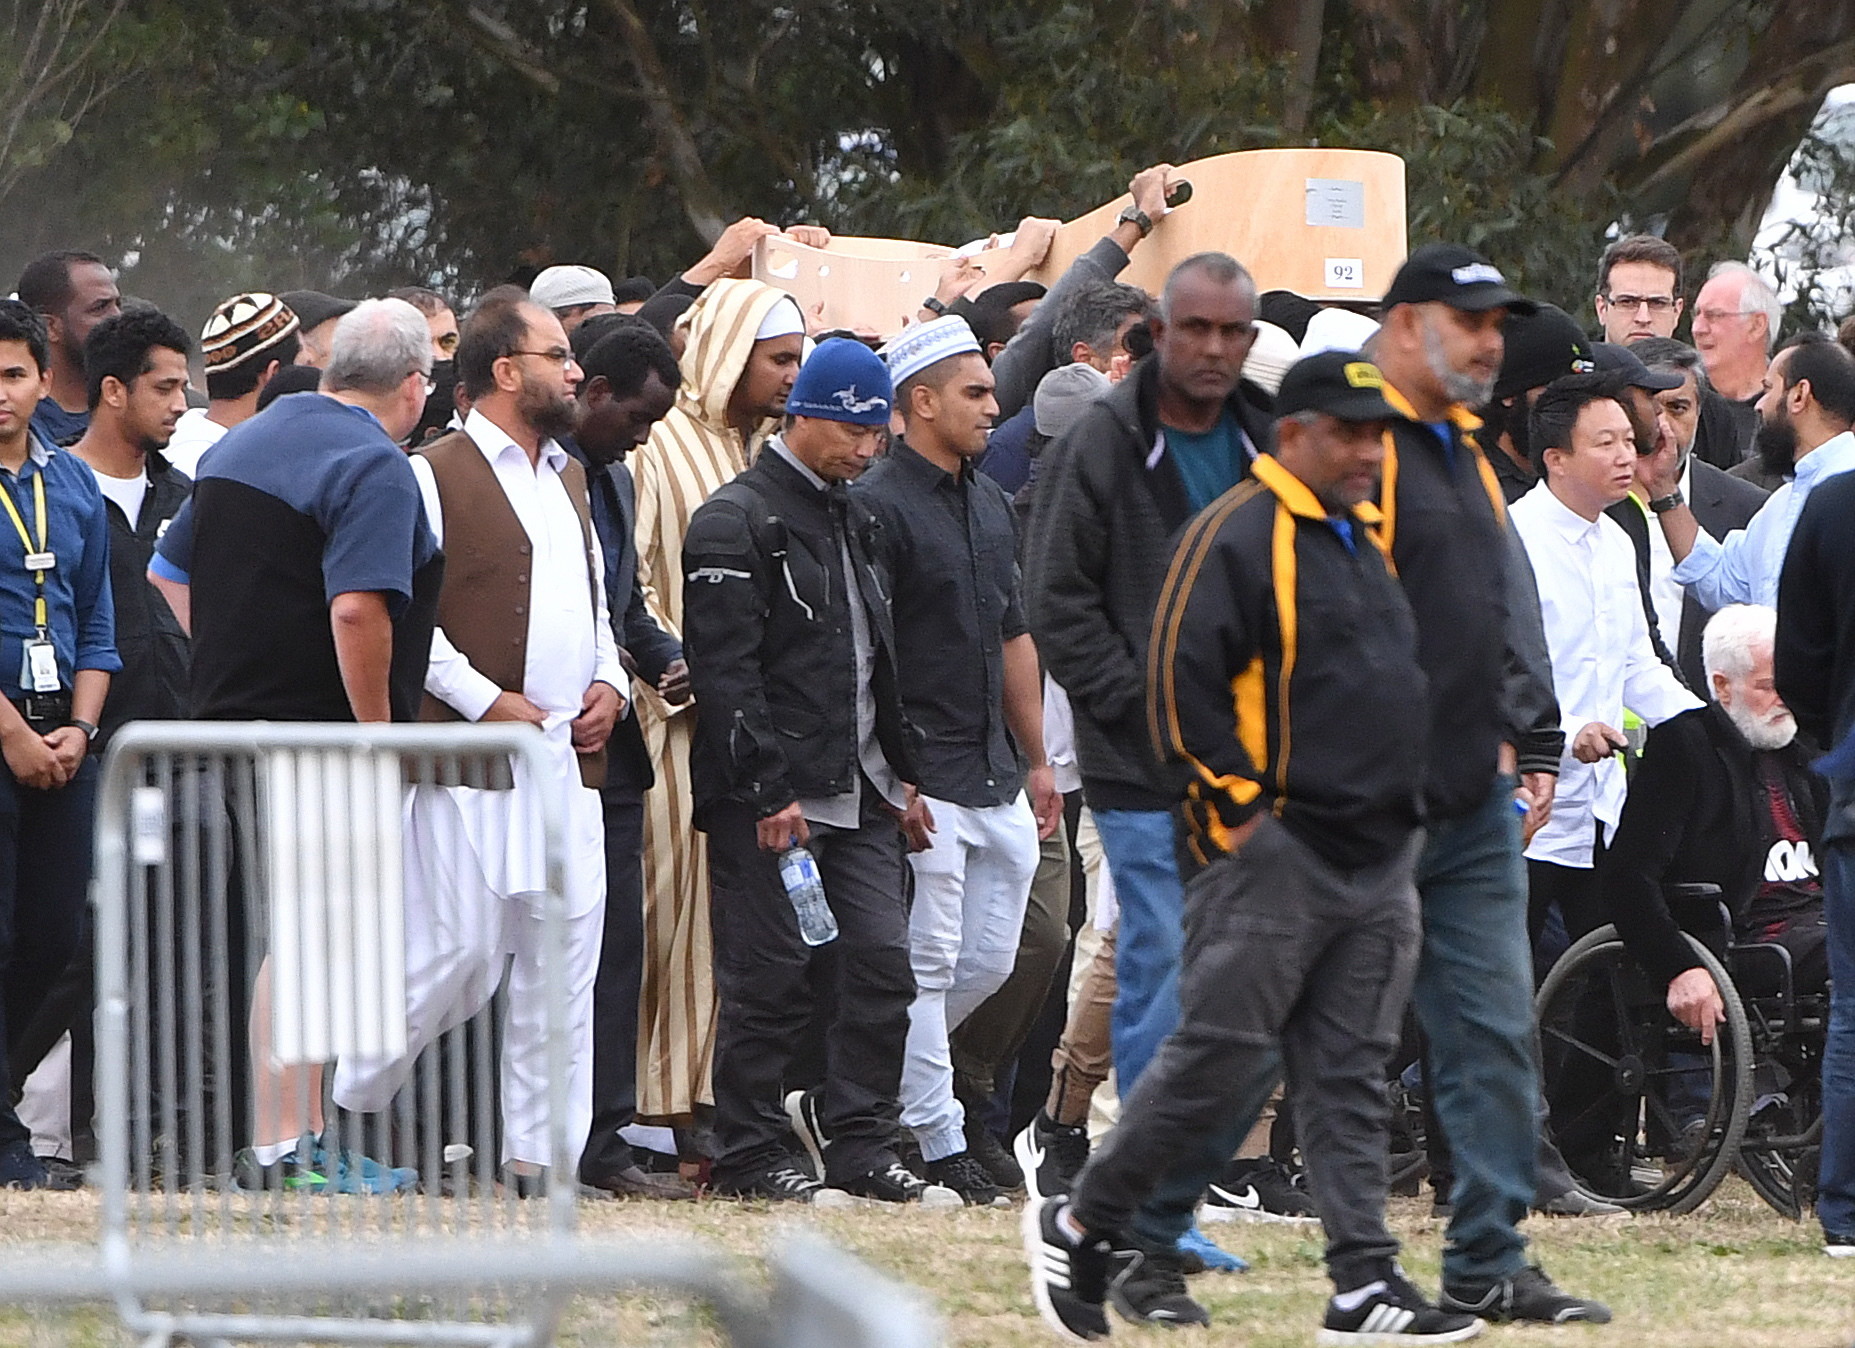 Żałoba i solidarność w Nowej Zelandii po zamachach. Trwają pogrzeby ofiar, misyjne pl